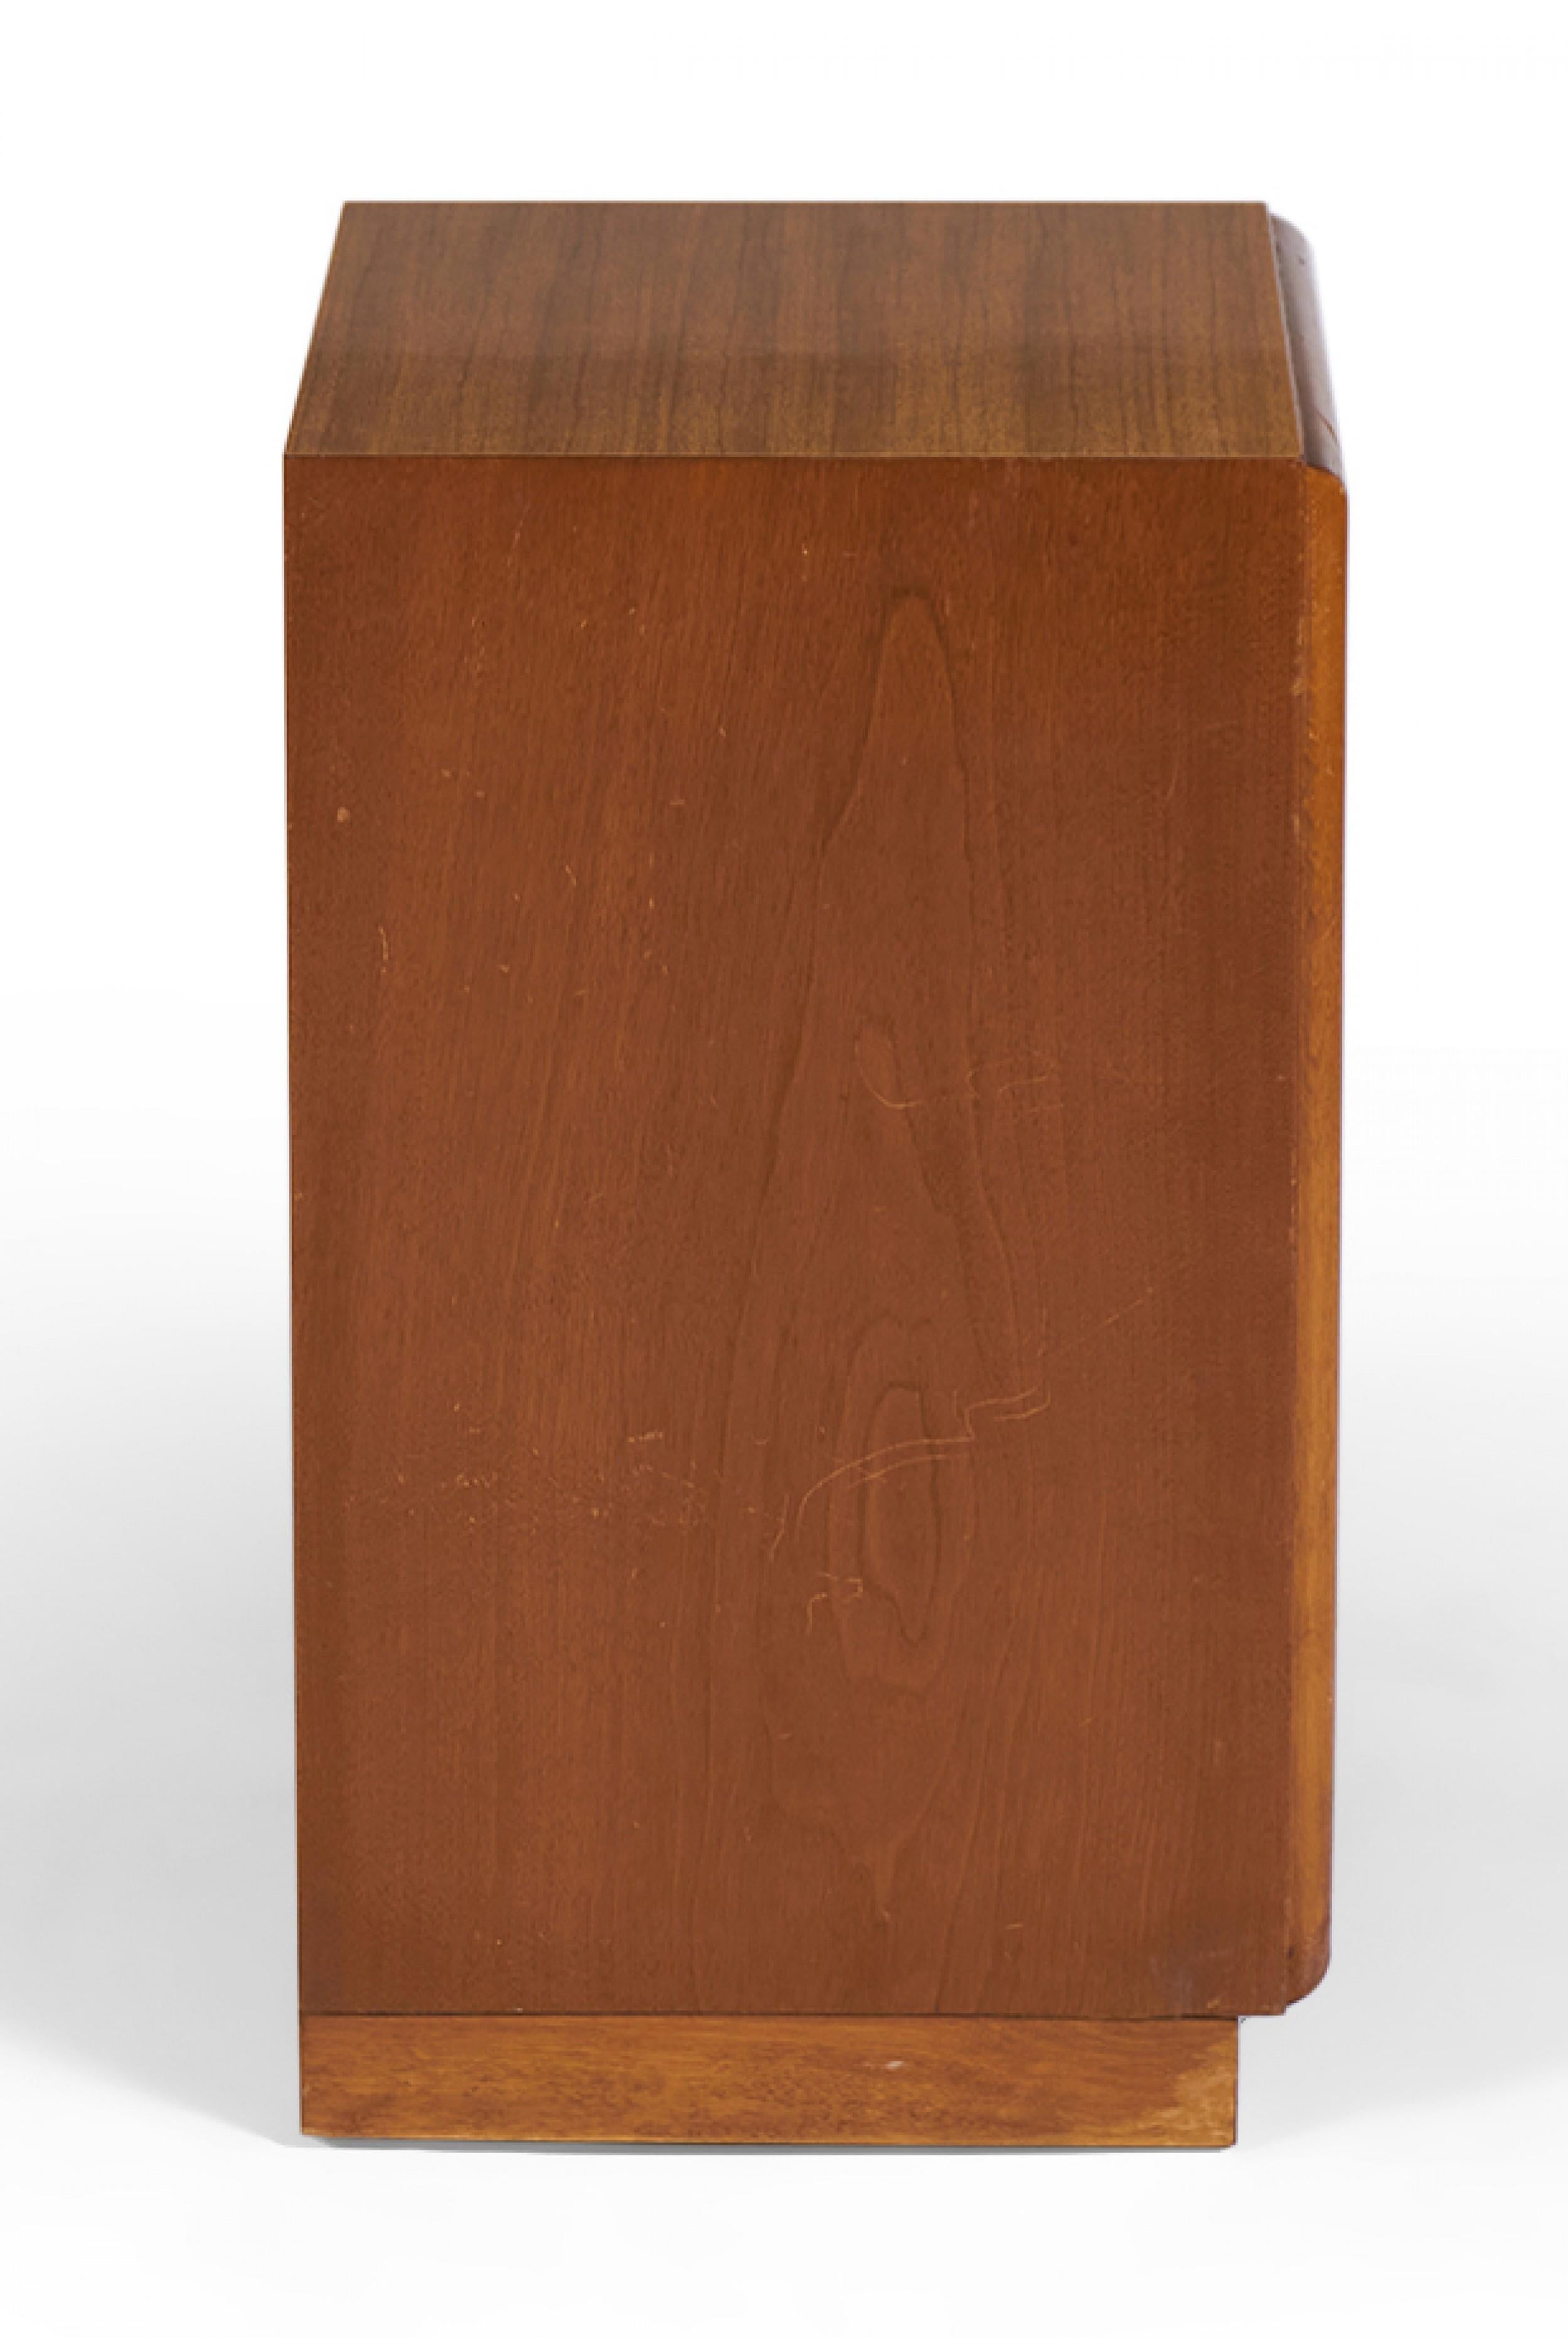 T.H. Robsjohn-Gibbings for Widdicomb Walnut Lower Drawer Nightstand  / Cabinet For Sale 1